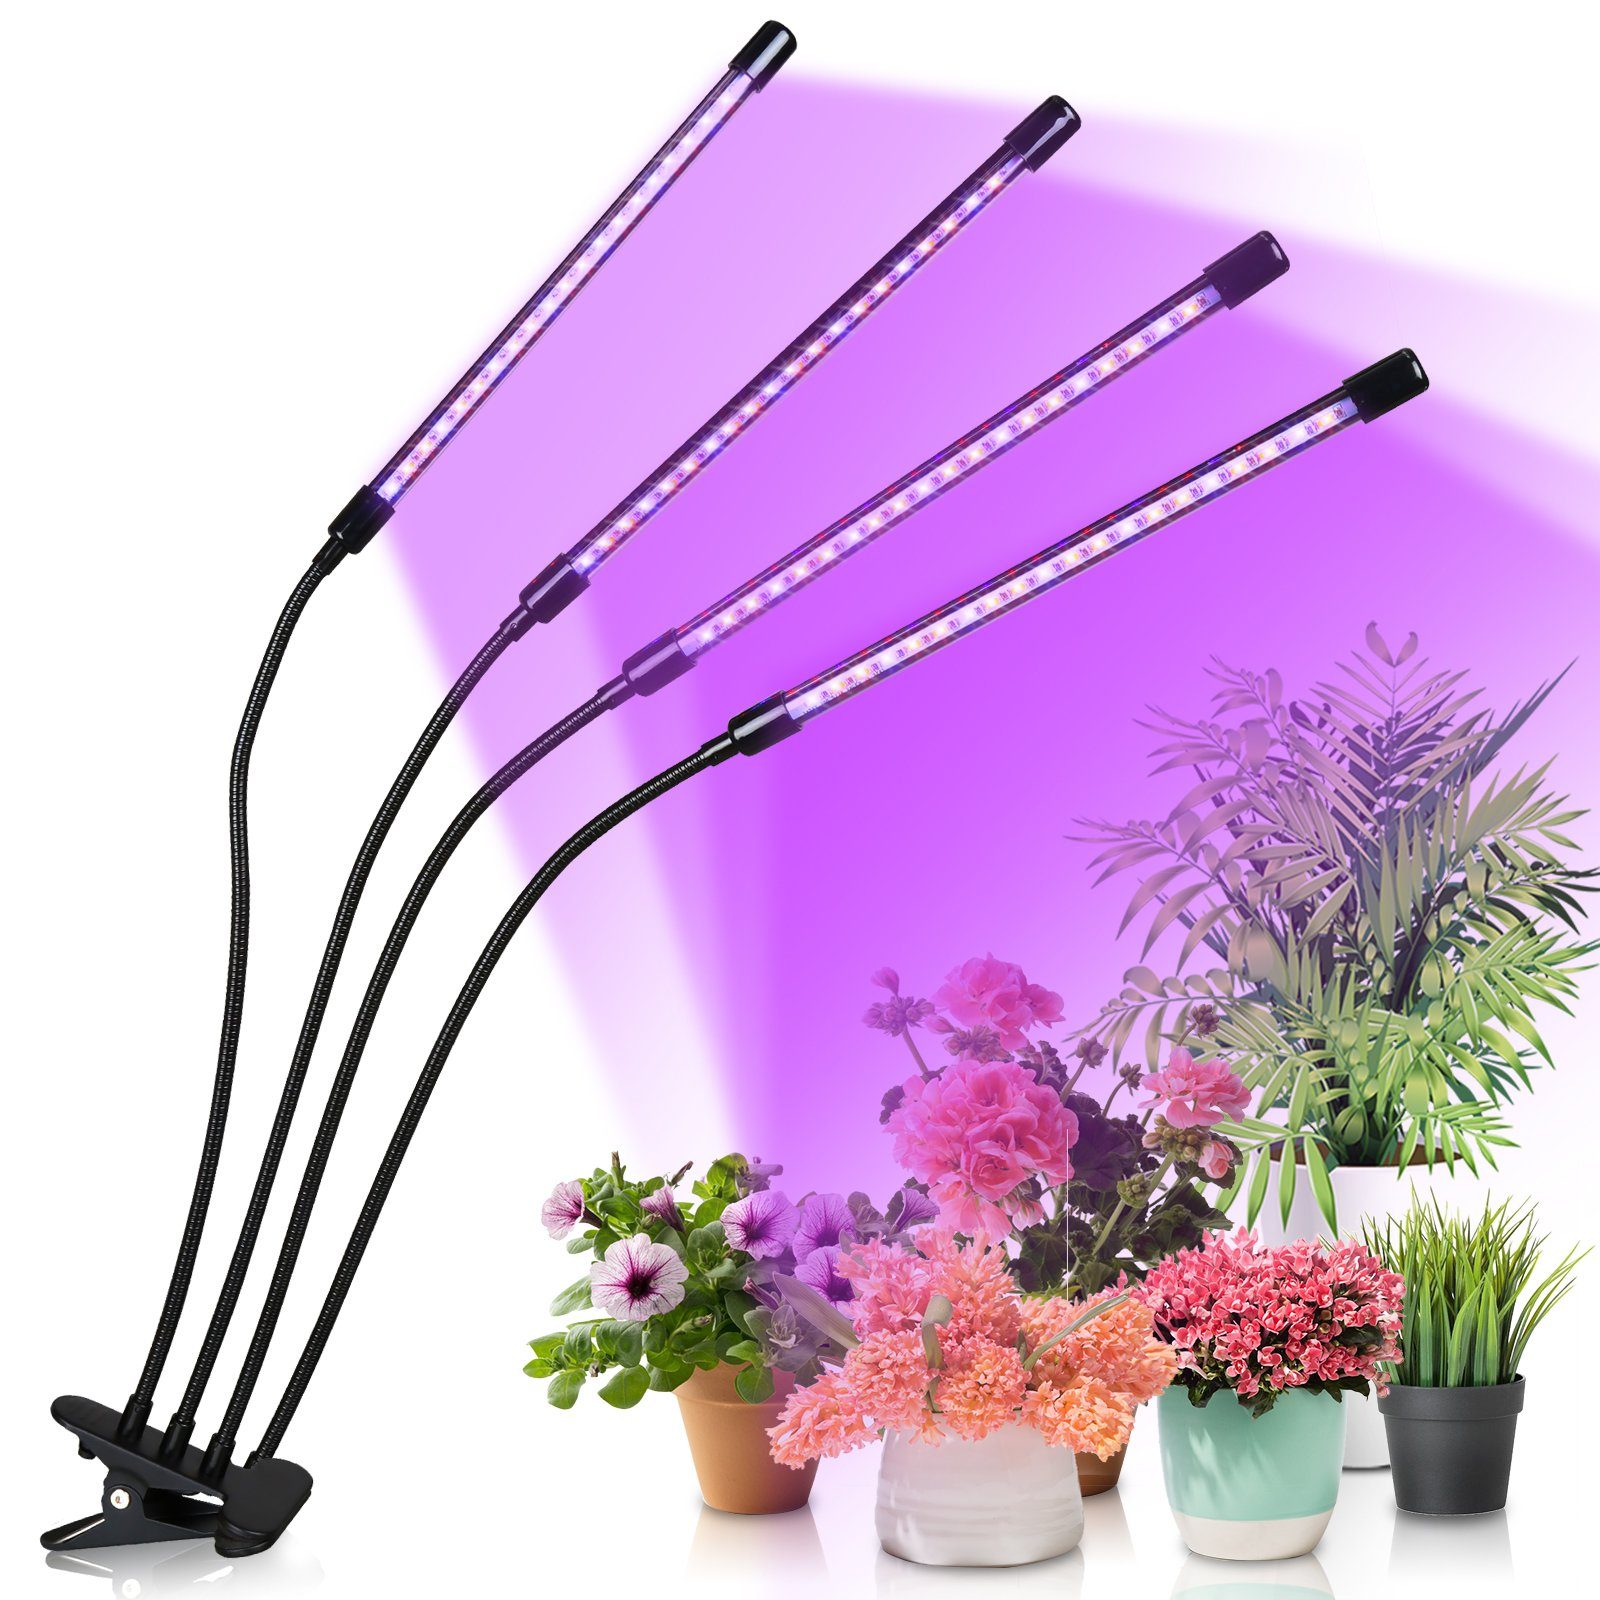 Gimisgu Pflanzenlampe LED Pflanzenlicht 80 LEDs 4 Köpfe Grow Lampe Pflanzenleuchte, Wachstumslampe Pflanzen 10 Dimmstufen LED Zimmerpflanzen Vollspektrum